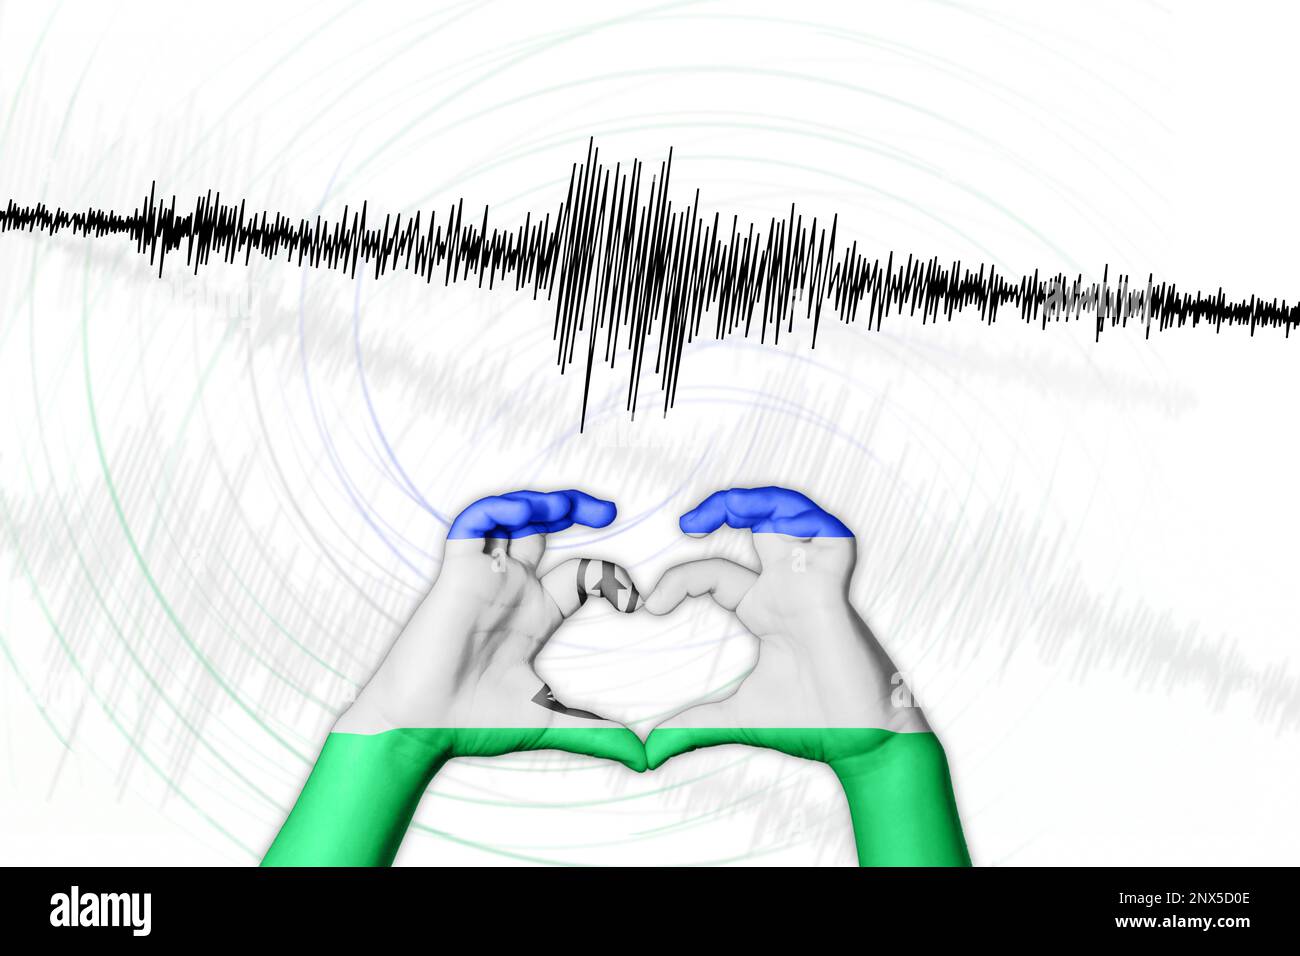 Seismische Aktivität Erdbeben Lesotho Symbol der Heart Richter Scale Stockfoto